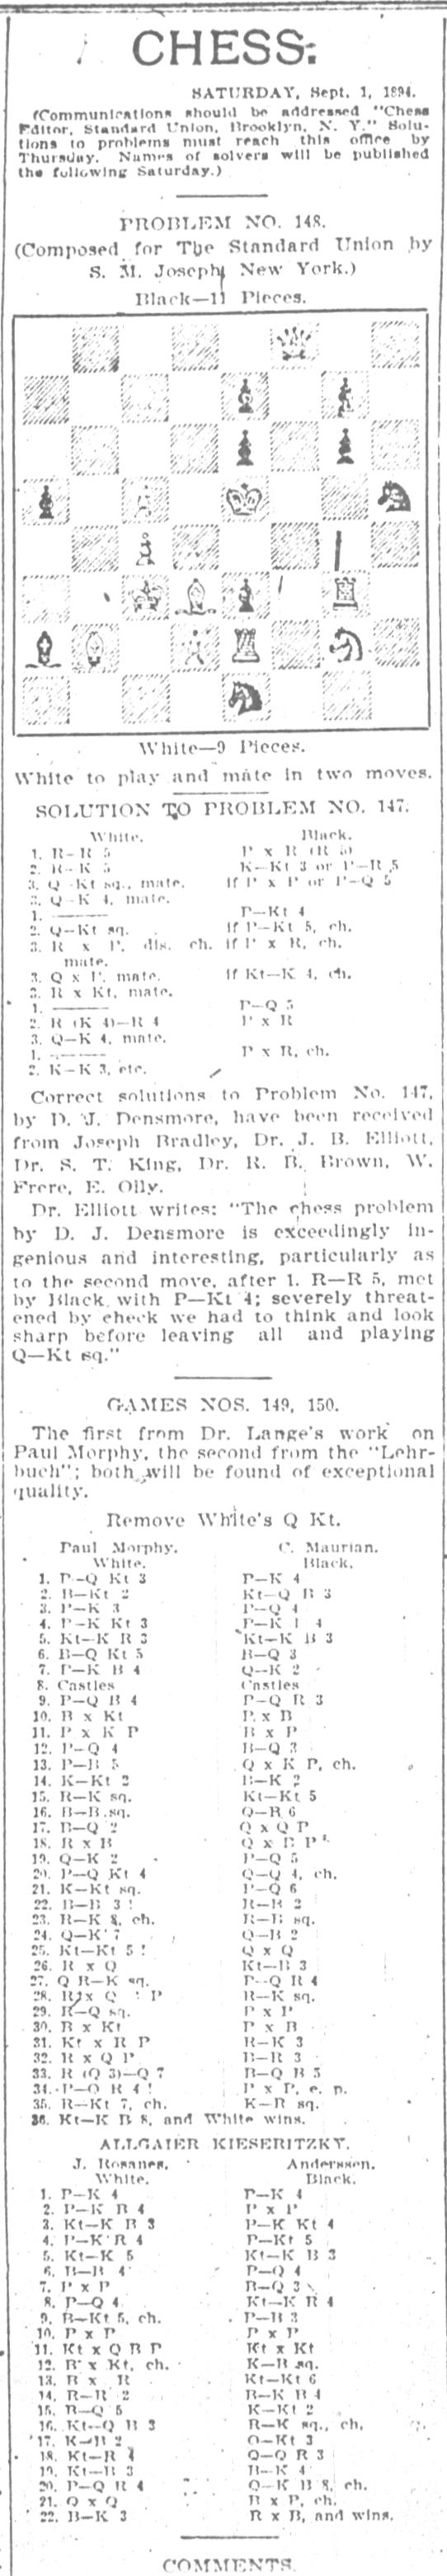 1894.09.01-01 Brooklyn Daily Standard-Union.jpg